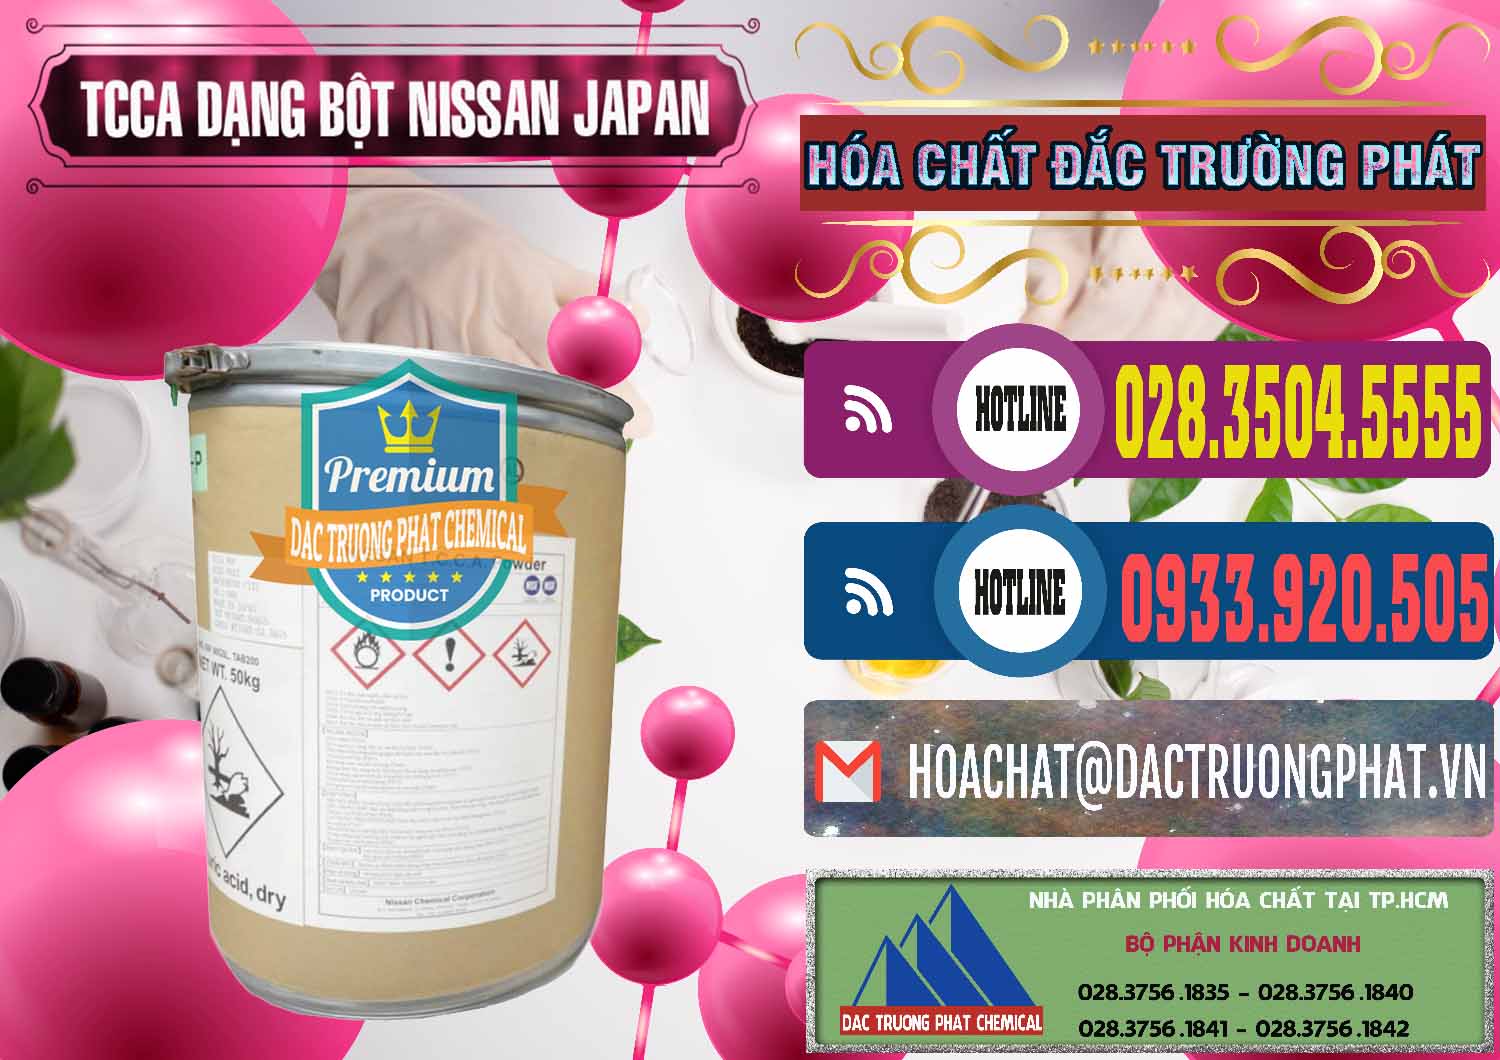 Đơn vị chuyên cung cấp ( bán ) TCCA - Acid Trichloroisocyanuric 90% Dạng Bột Nissan Nhật Bản Japan - 0375 - Công ty chuyên phân phối ( nhập khẩu ) hóa chất tại TP.HCM - muabanhoachat.com.vn